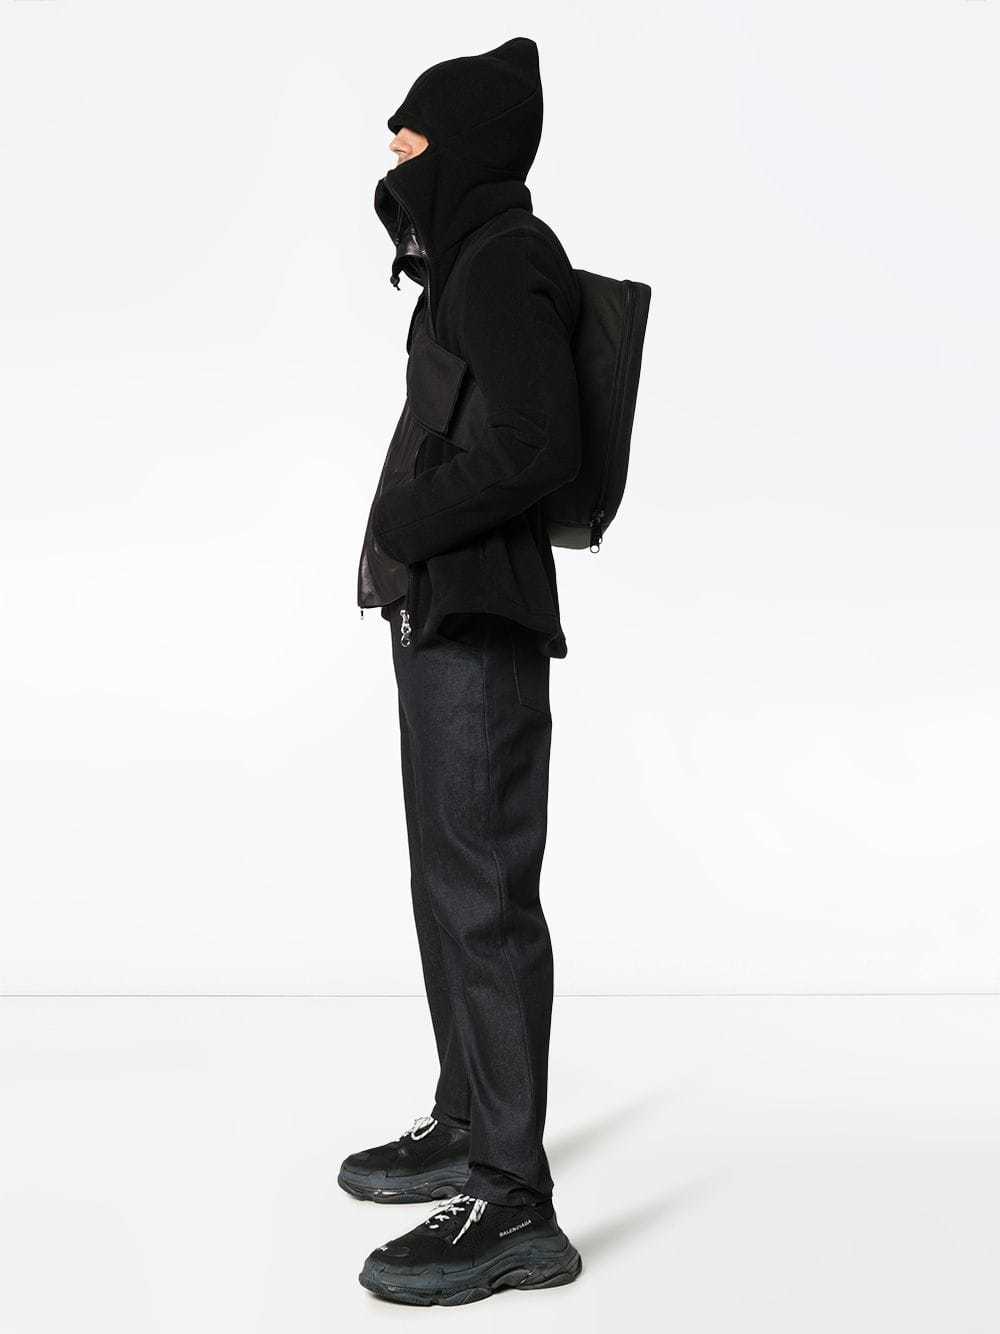 Vexed Generation Ninja Double Zip Hooded Fleece Jacket, $281